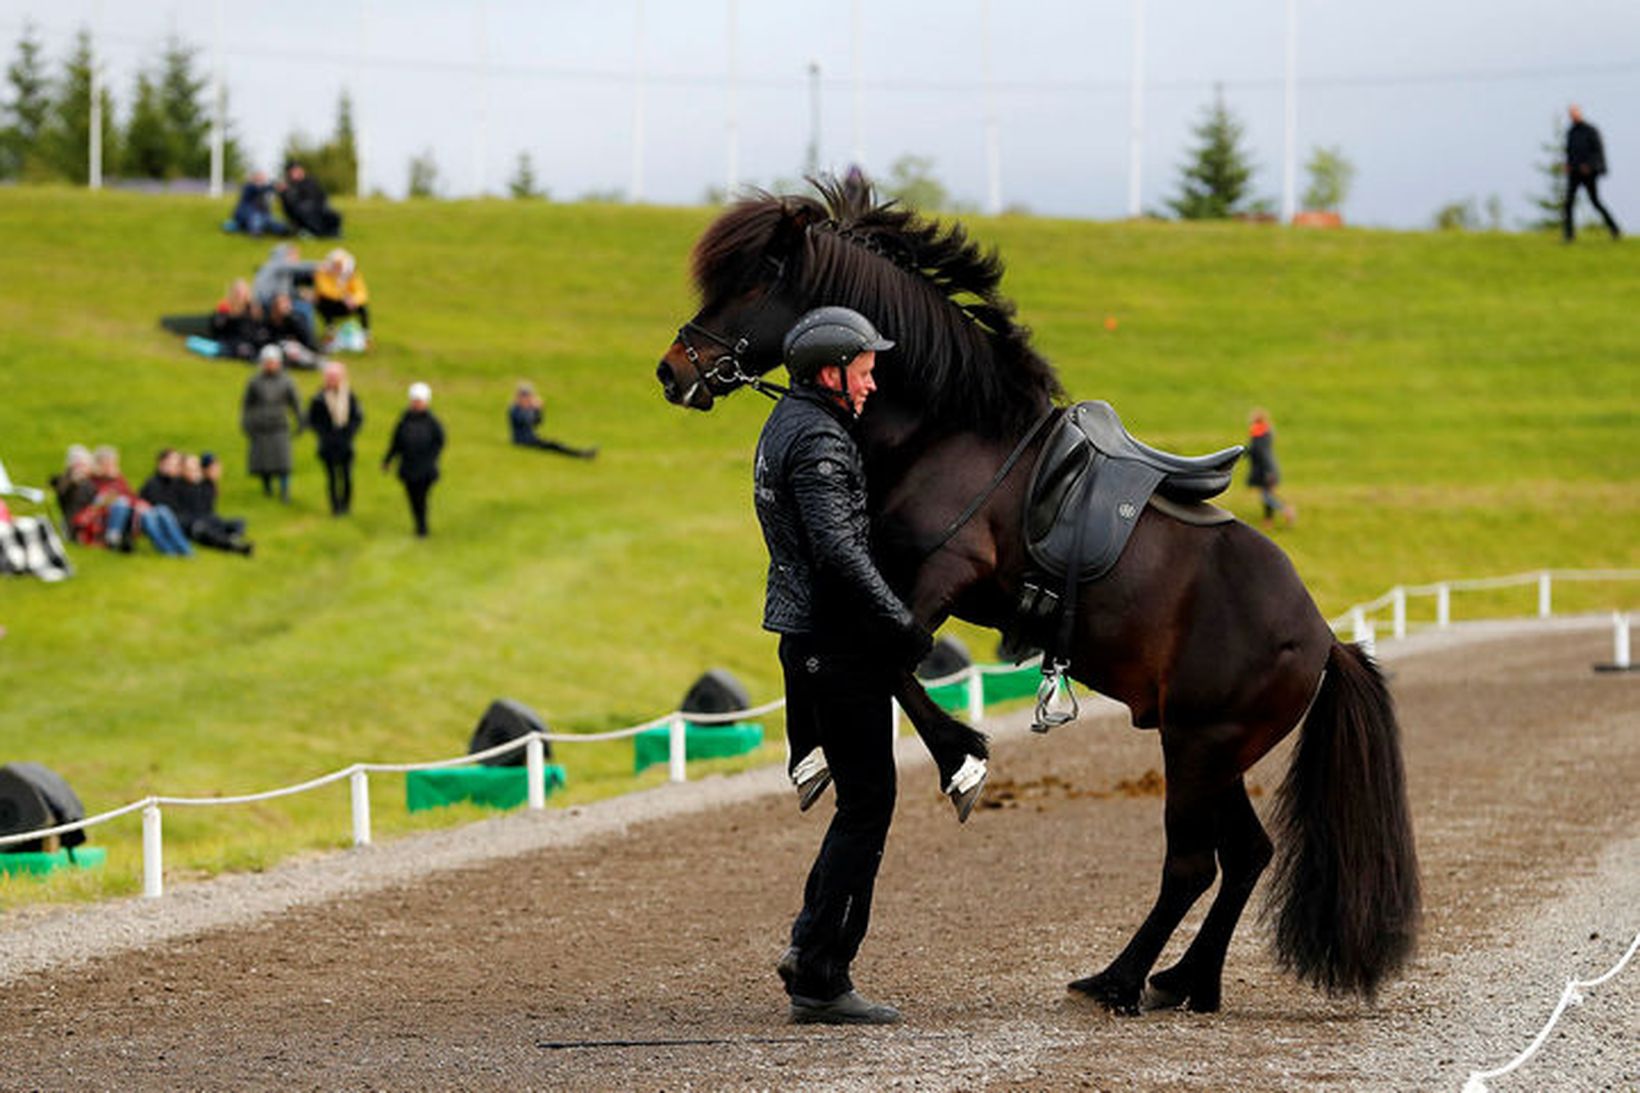 Knapi frá Vesturkoti fékk hest sinn til að sýna kúnstir.